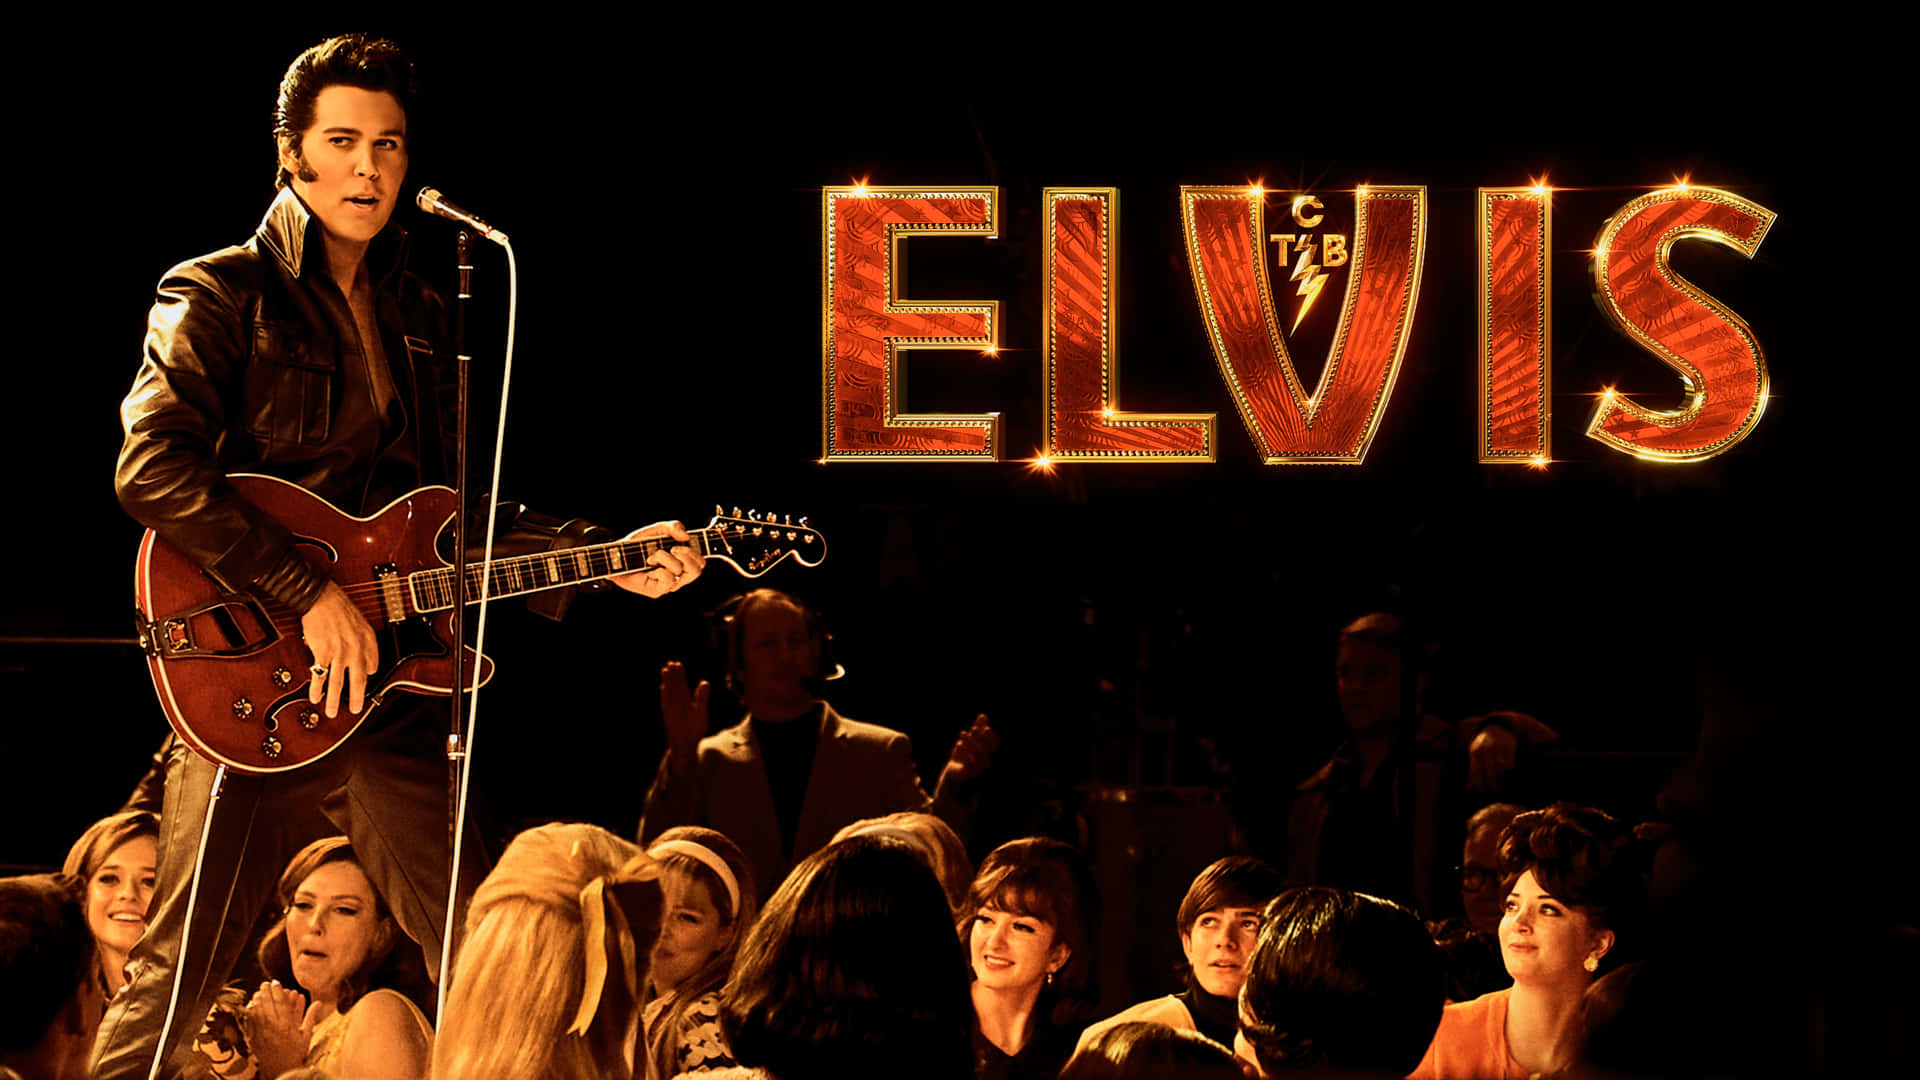 100 Elvis Presley Wallpapers  Wallpaperscom